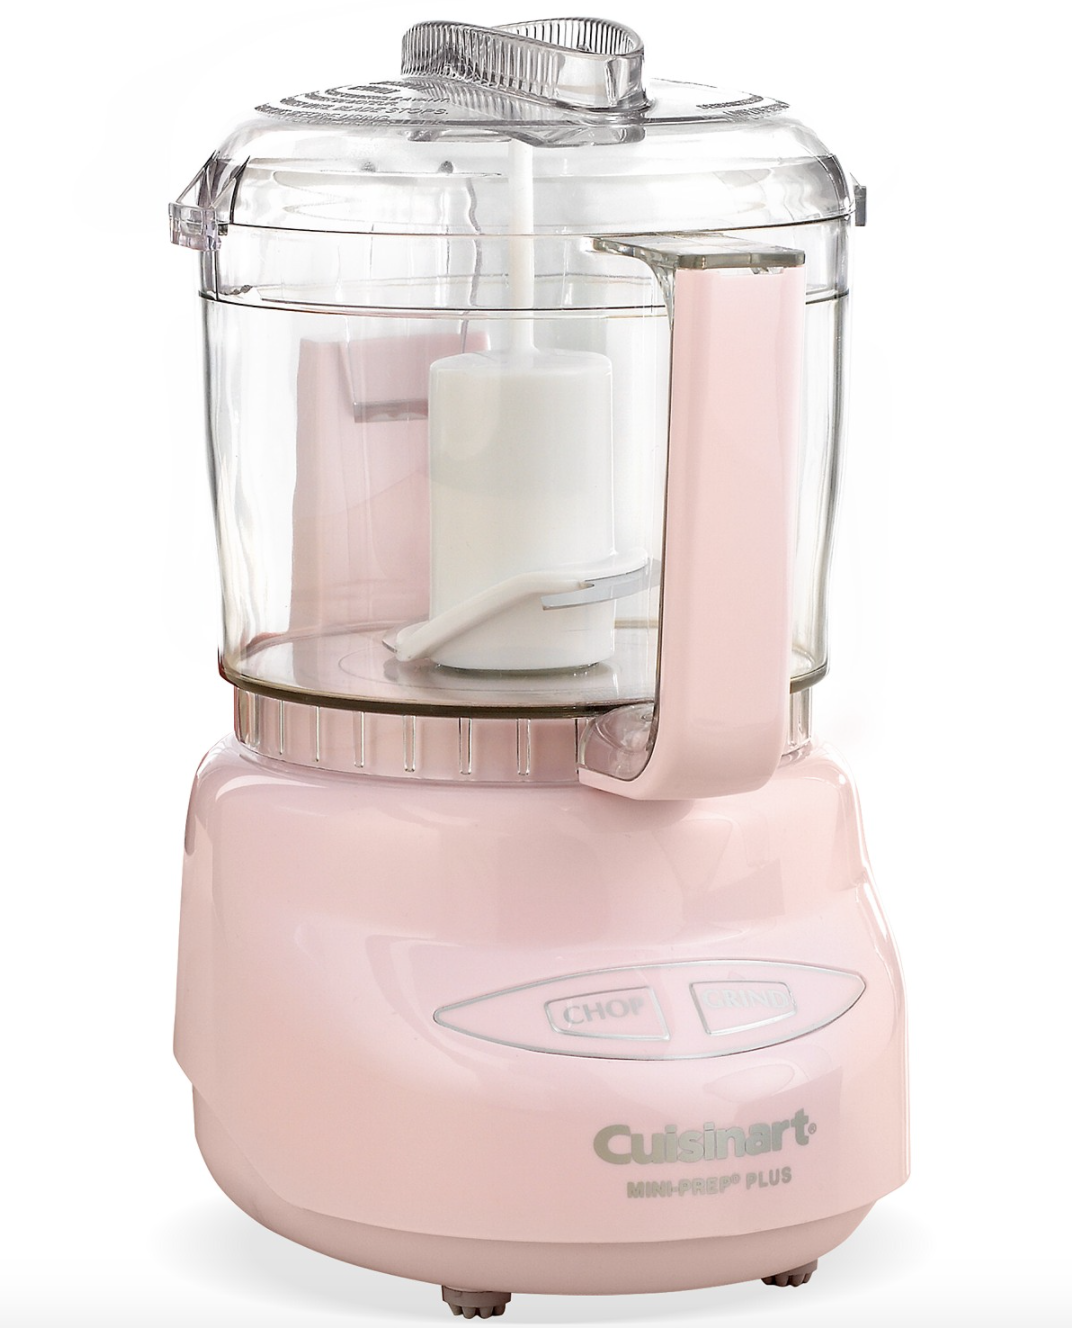 the pink mini food processor